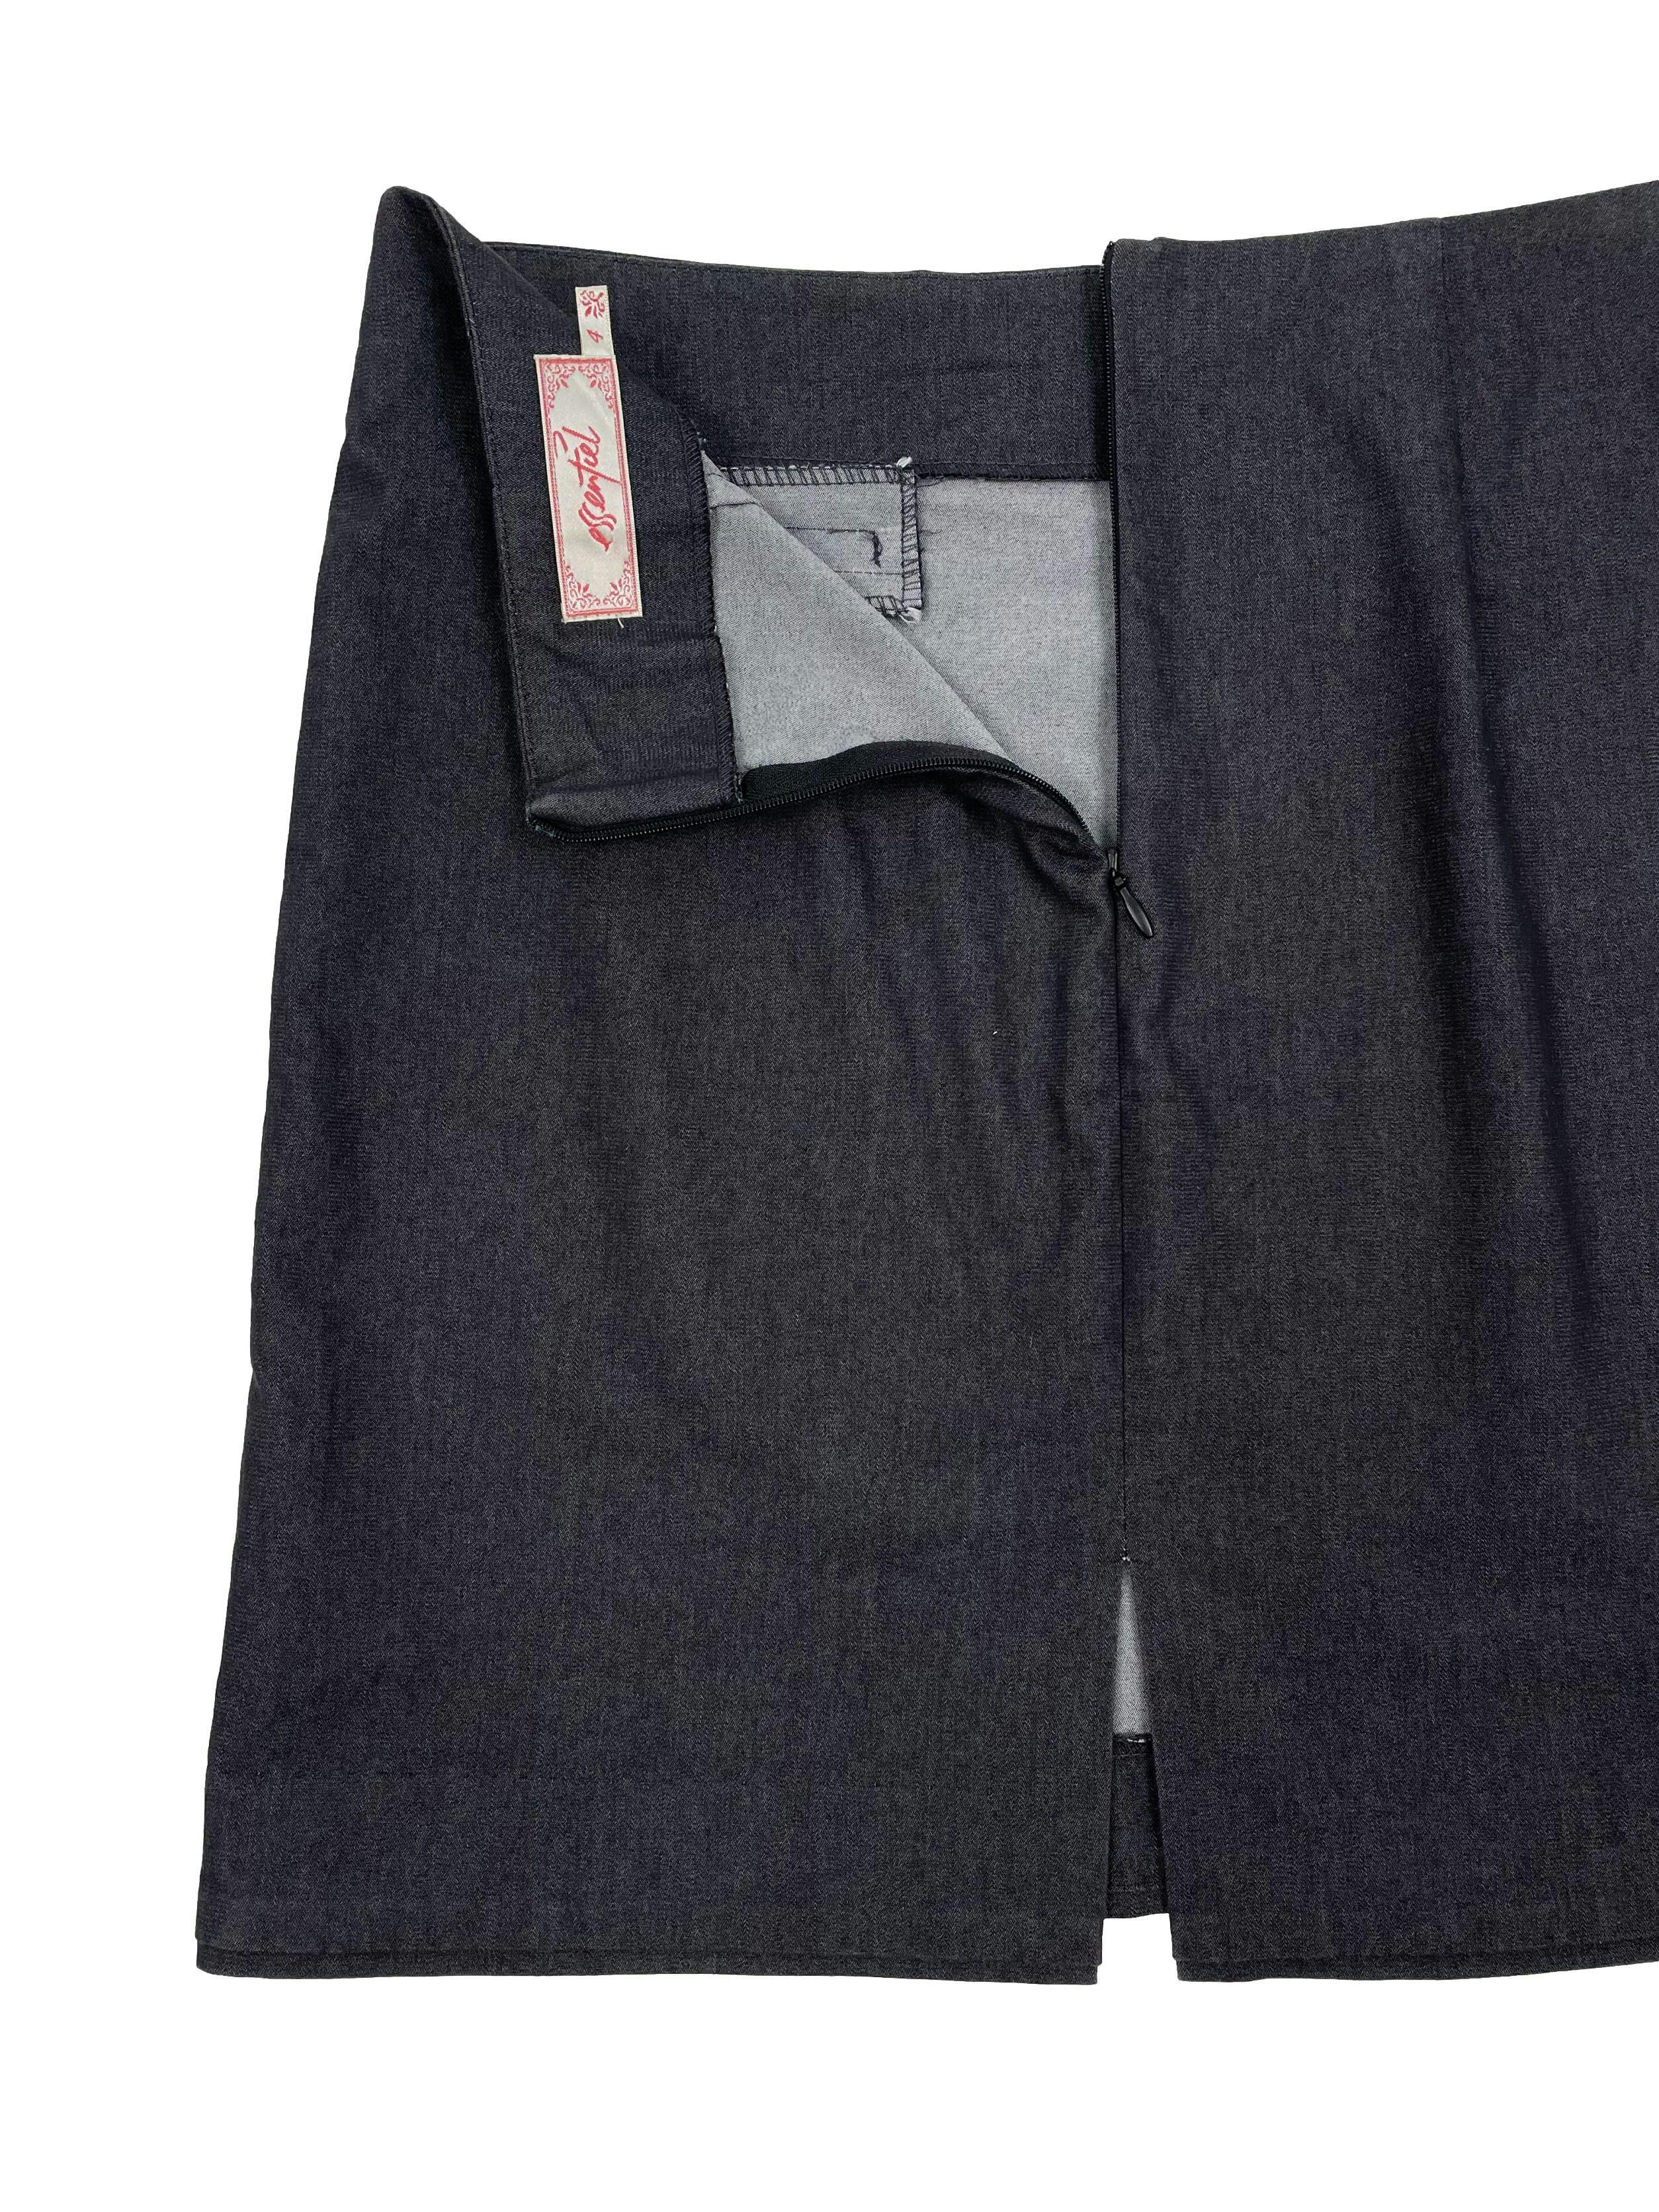 Falda Essentiel formal, color gris con falsos bolsillos, cierre invisible y abertura posterior. Cintura 76cm,Largo 44cm.